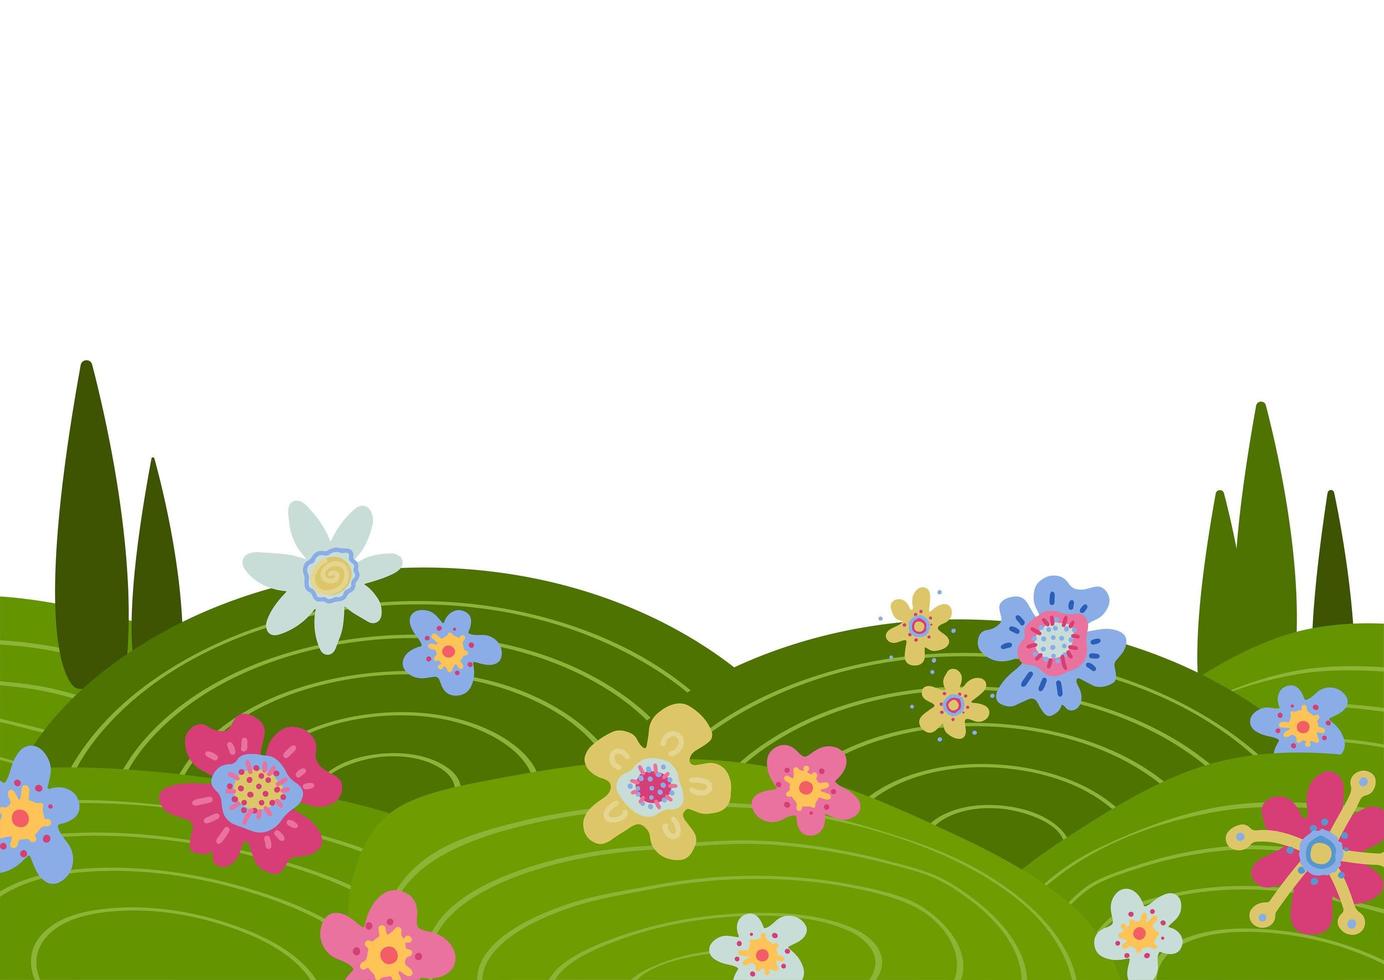 fondo de garabato con flores y colinas verdes dibujadas a mano. naturaleza creativa dibujada a mano ilustración de hermoso paisaje de verano o primavera. ilustración de vector plano con espacio en blanco para texto.